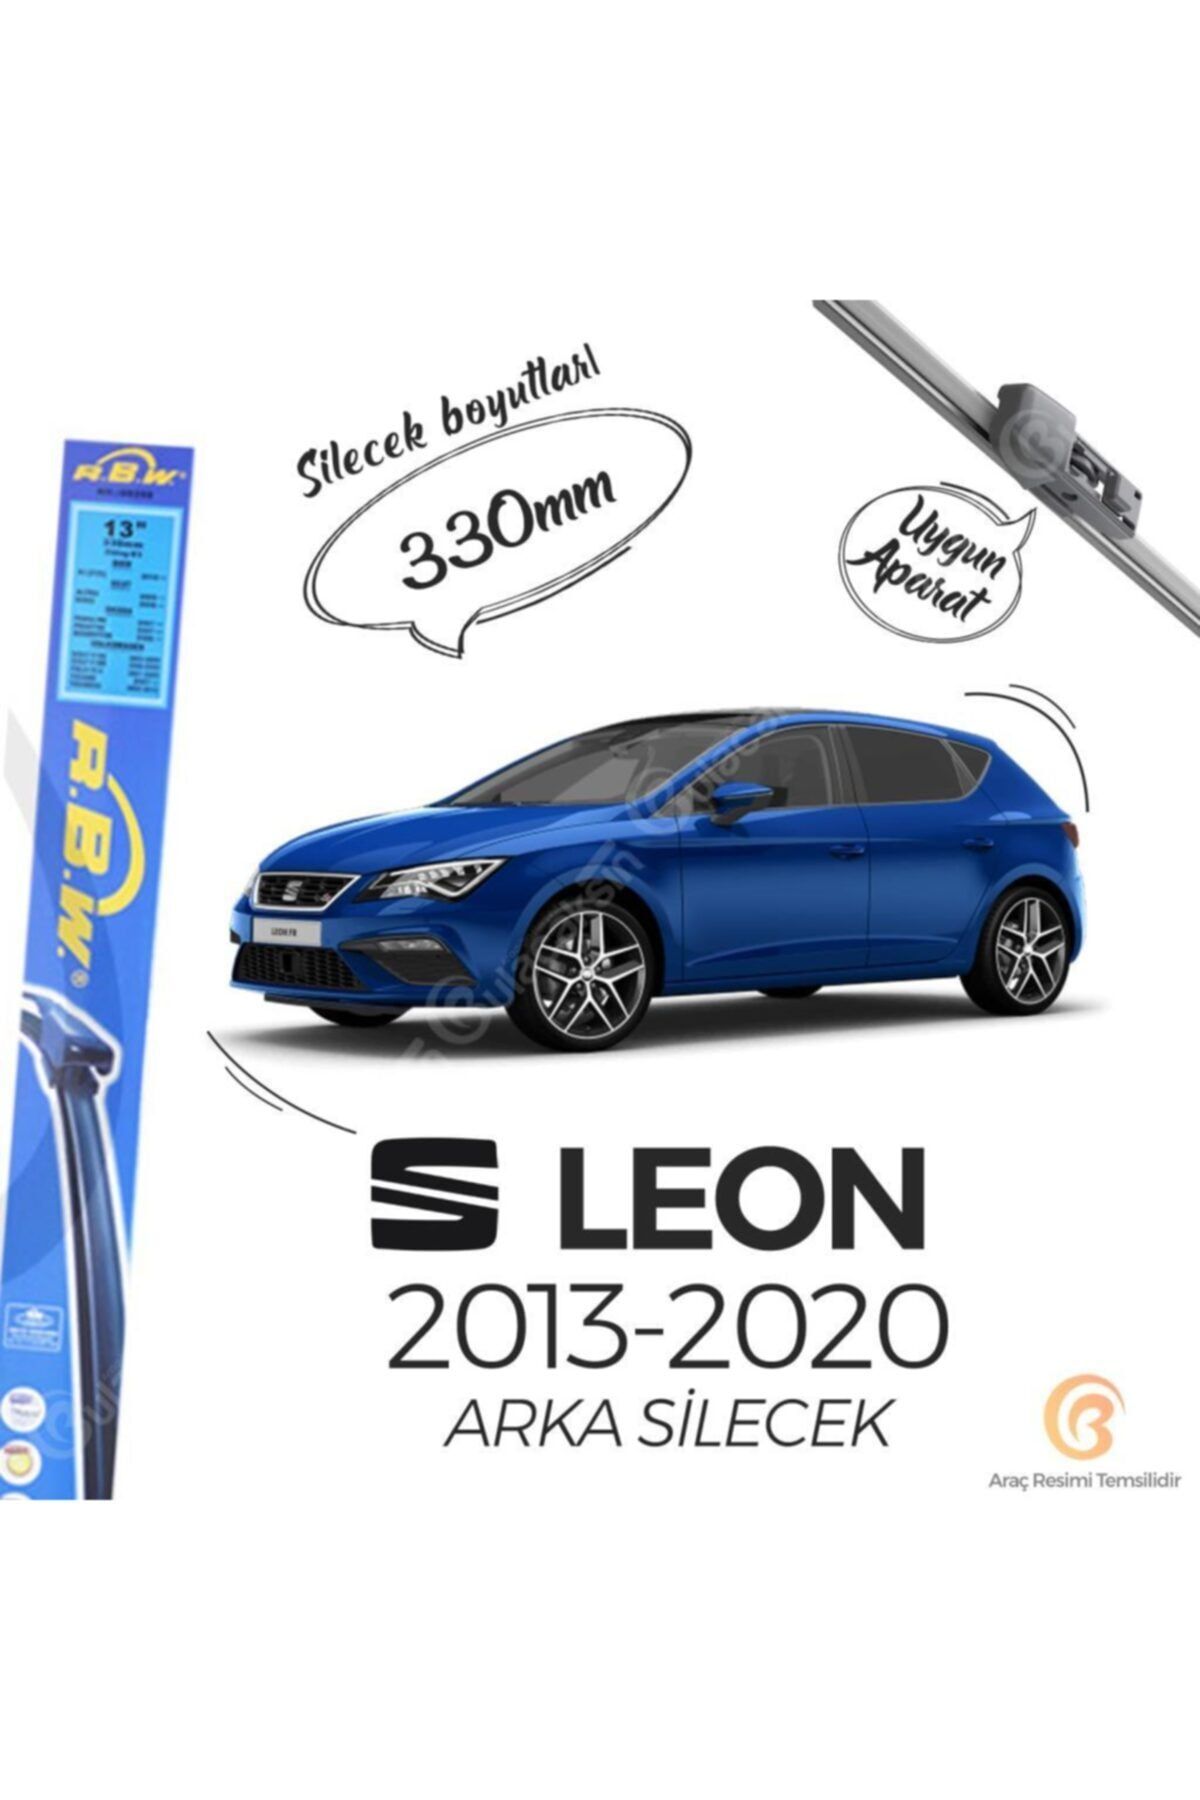 Rbw Seat Leon Arka Silecek (2013-2020)